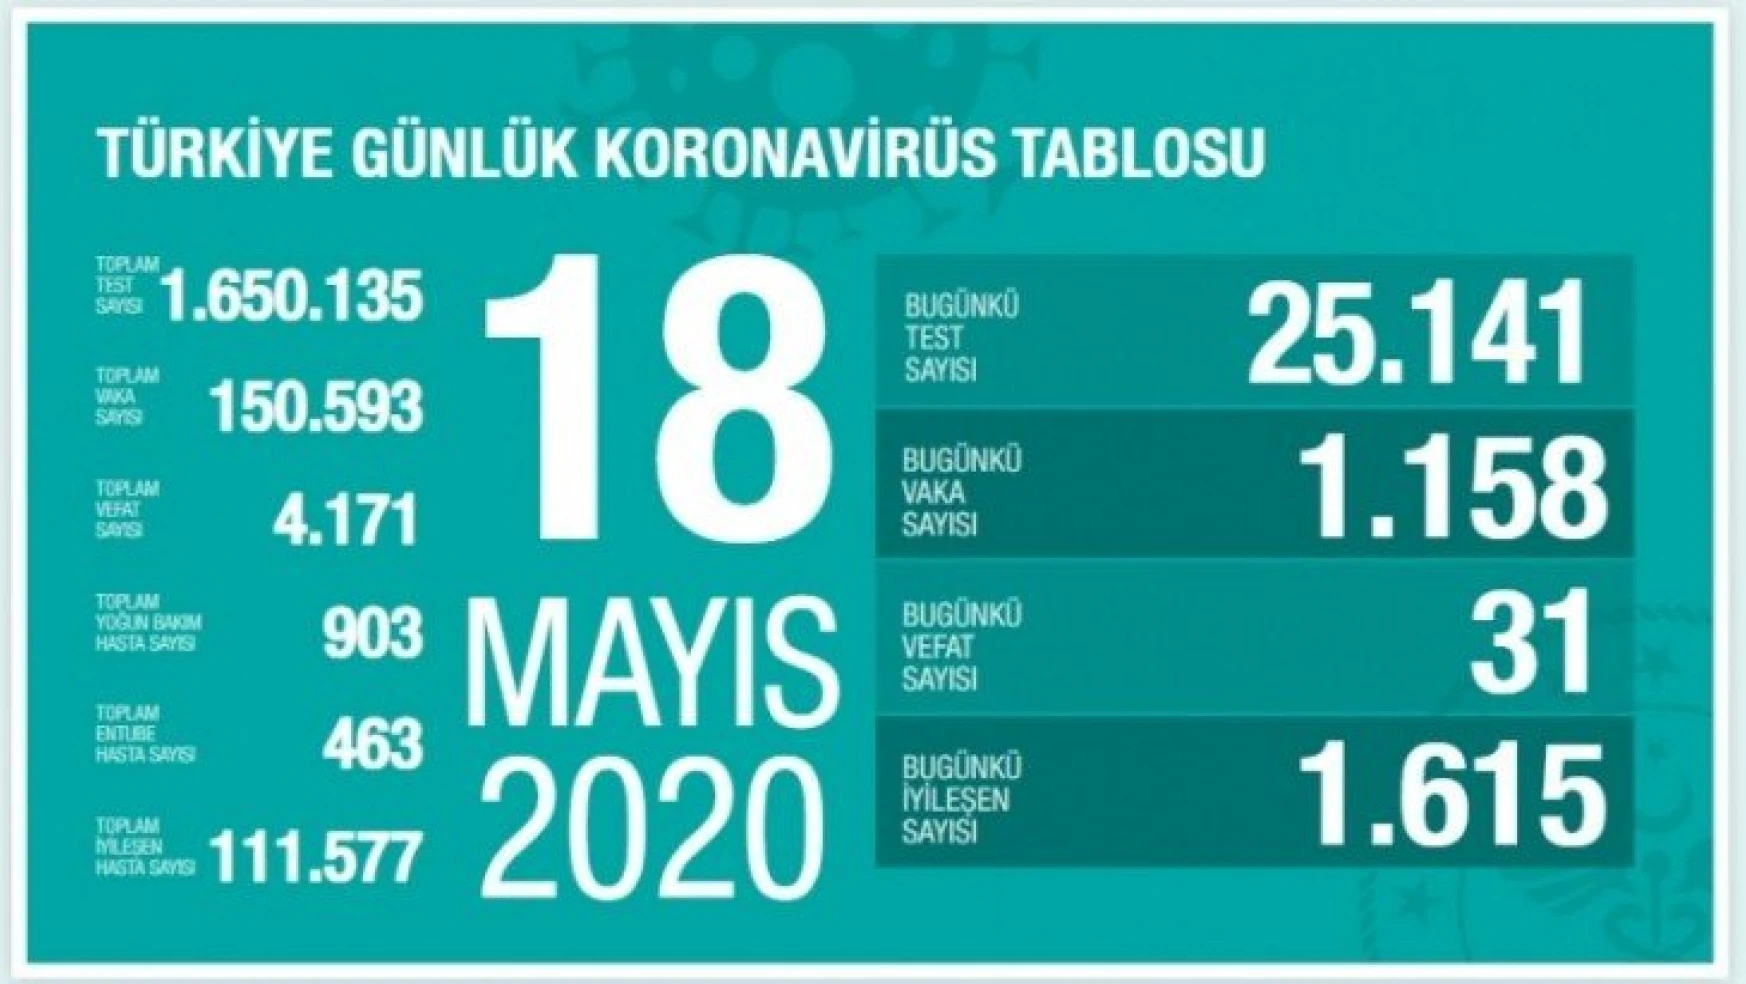 Türkiye'de son 24 saatte 1158 kişiye Kovid-19 tanısı kondu